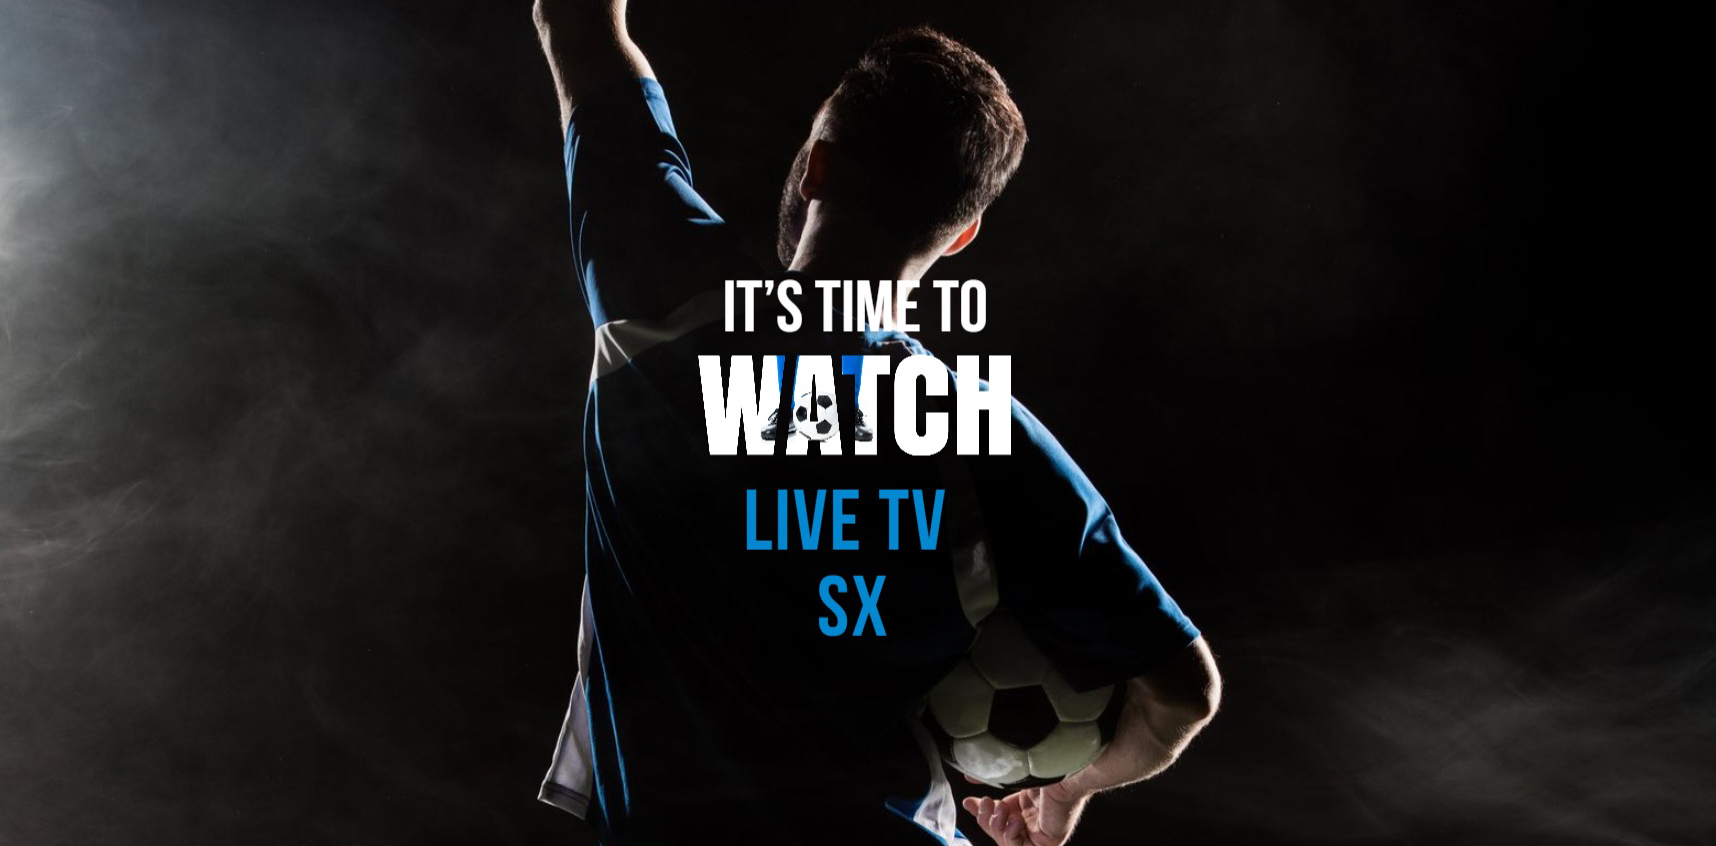 라이브 TV SX: 무료로 스포츠 라이브 스트리밍 시청